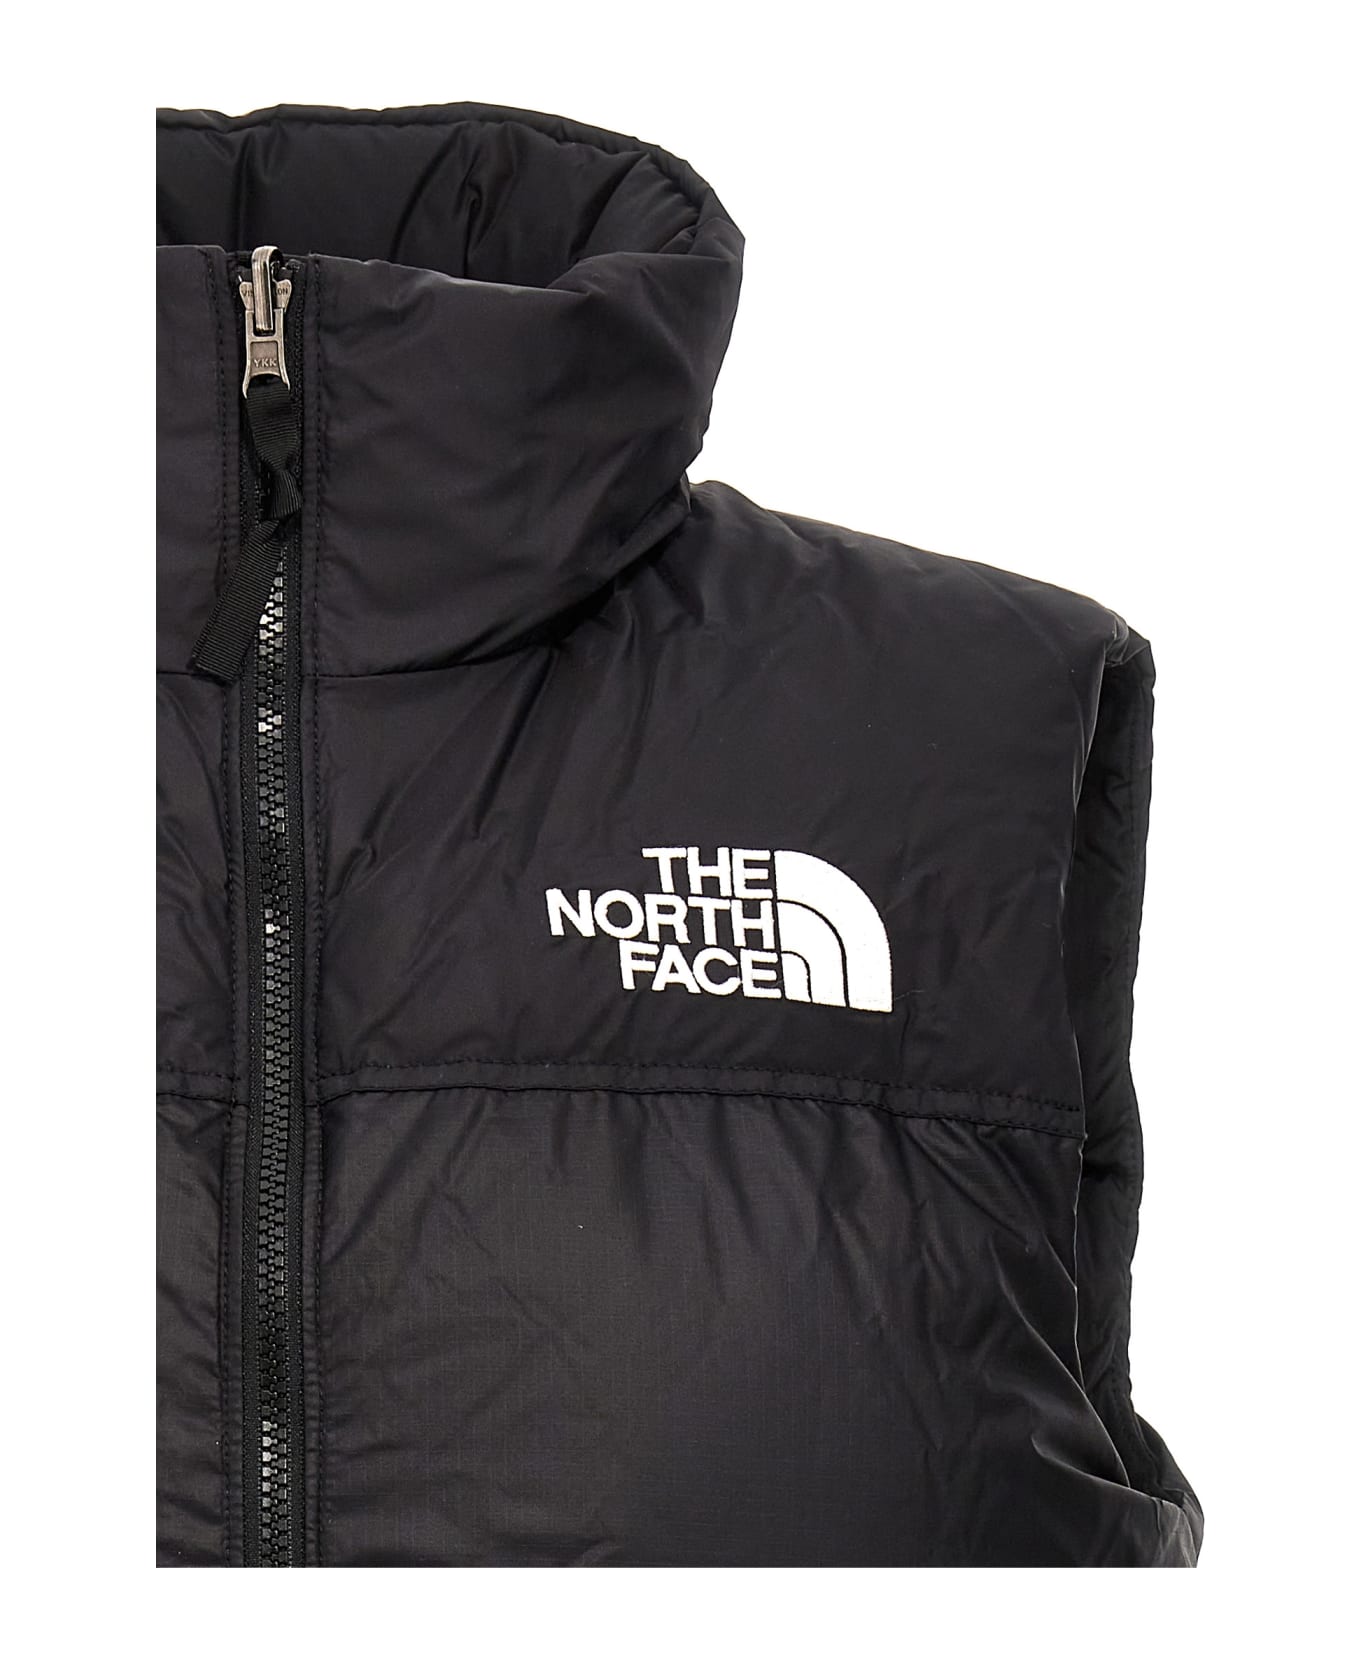 The North Face '1996 Retro Nuptse' Vest - Black